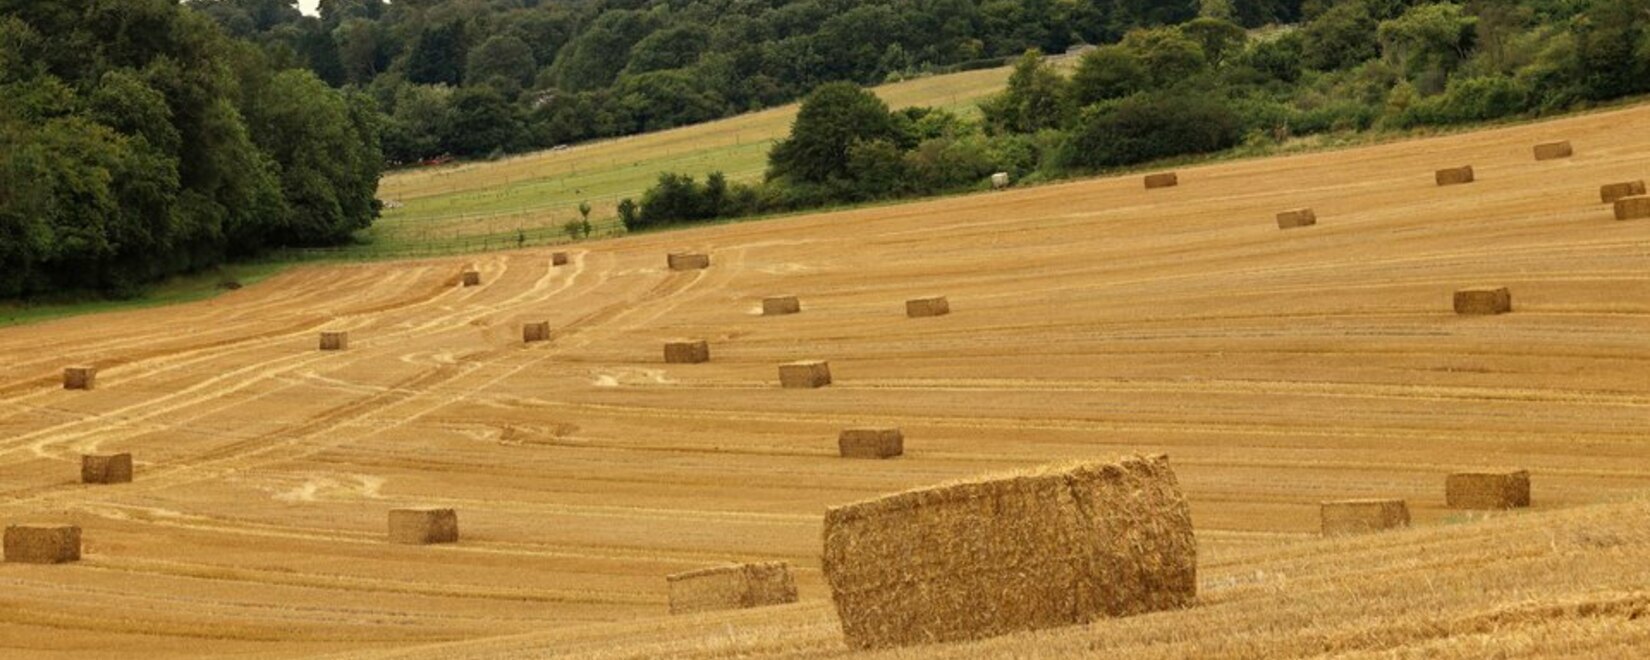 Производство зерна и прогнозы на 2023/24 в Великобритании